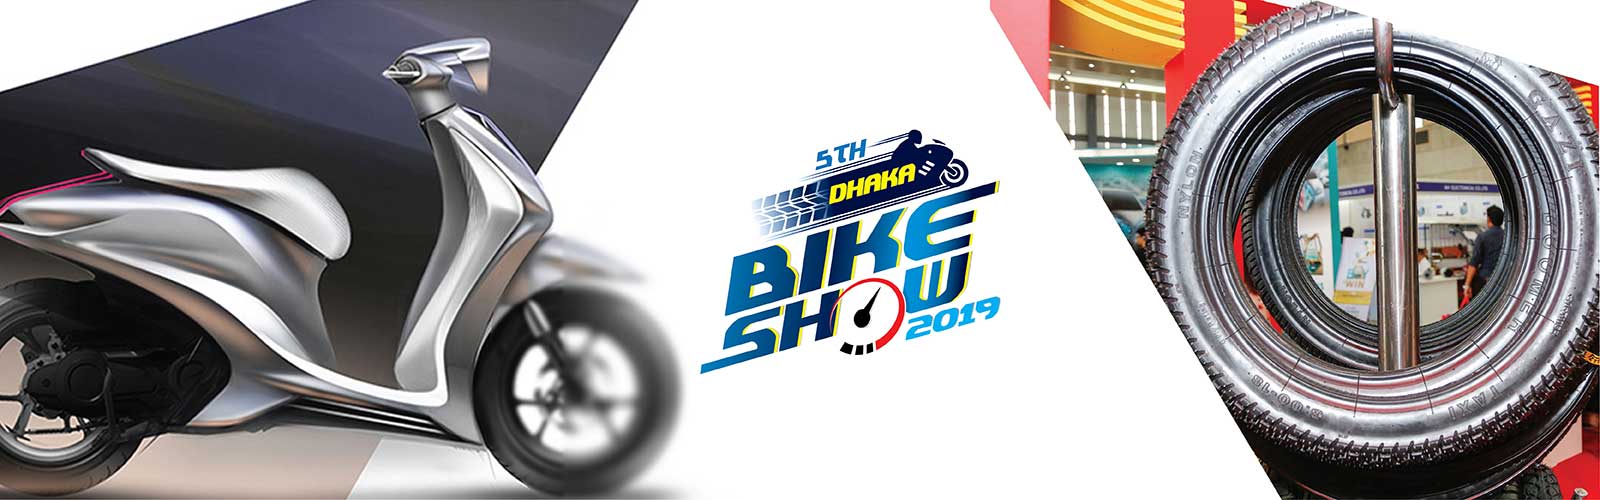  5th Dhaka Bike Show 2019